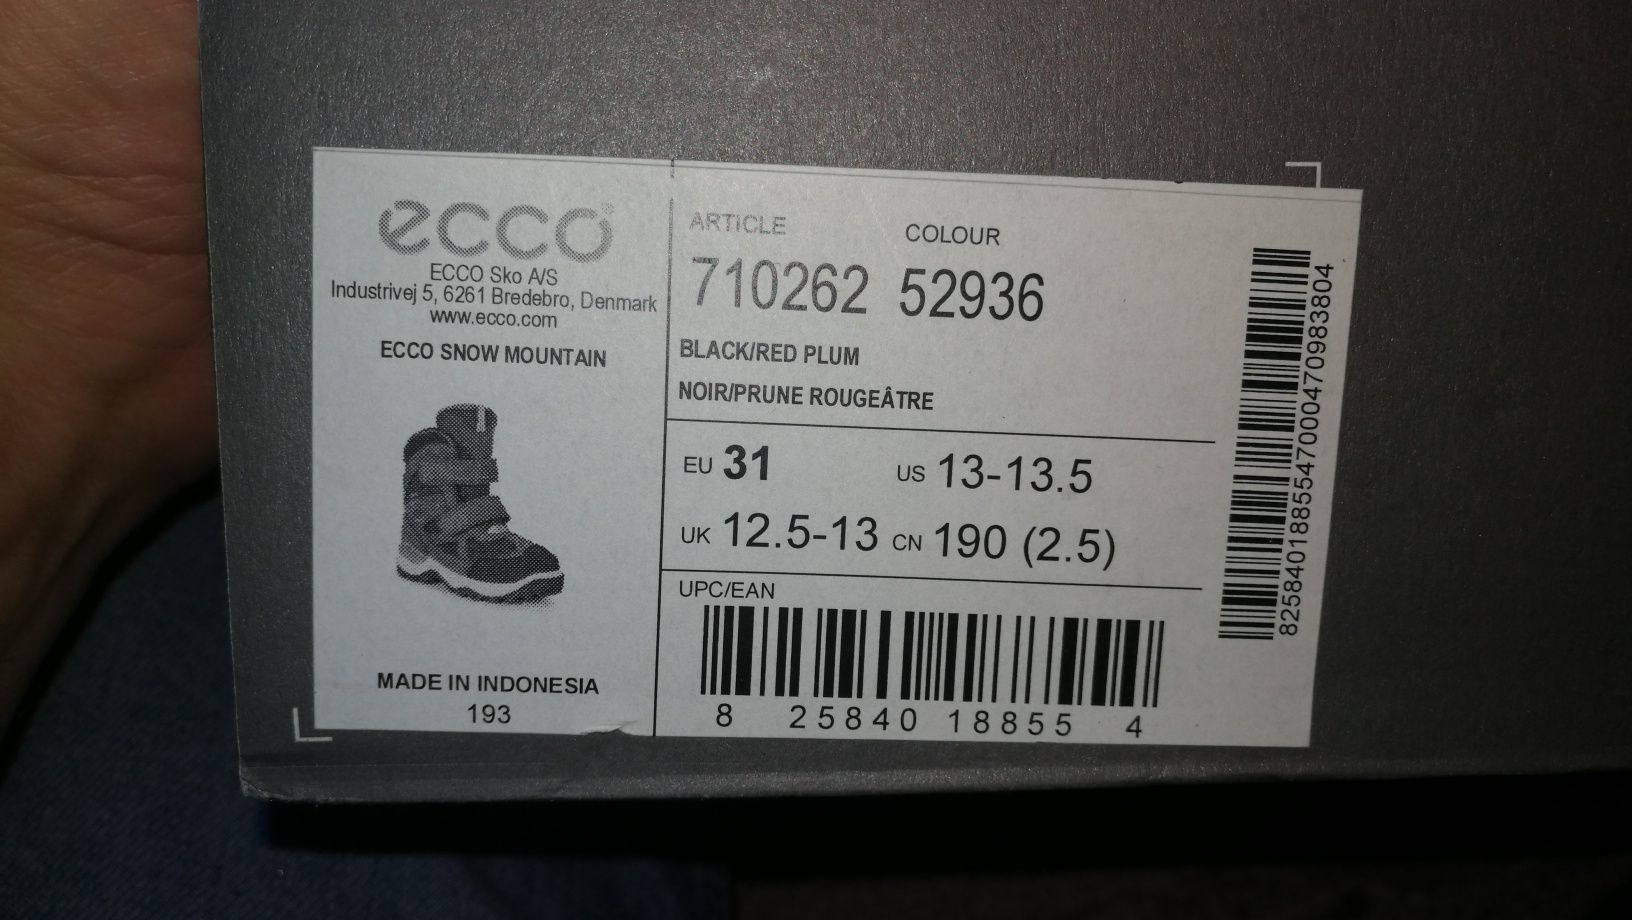 Dziecięce buty zimowe Ecco rozmiar 31